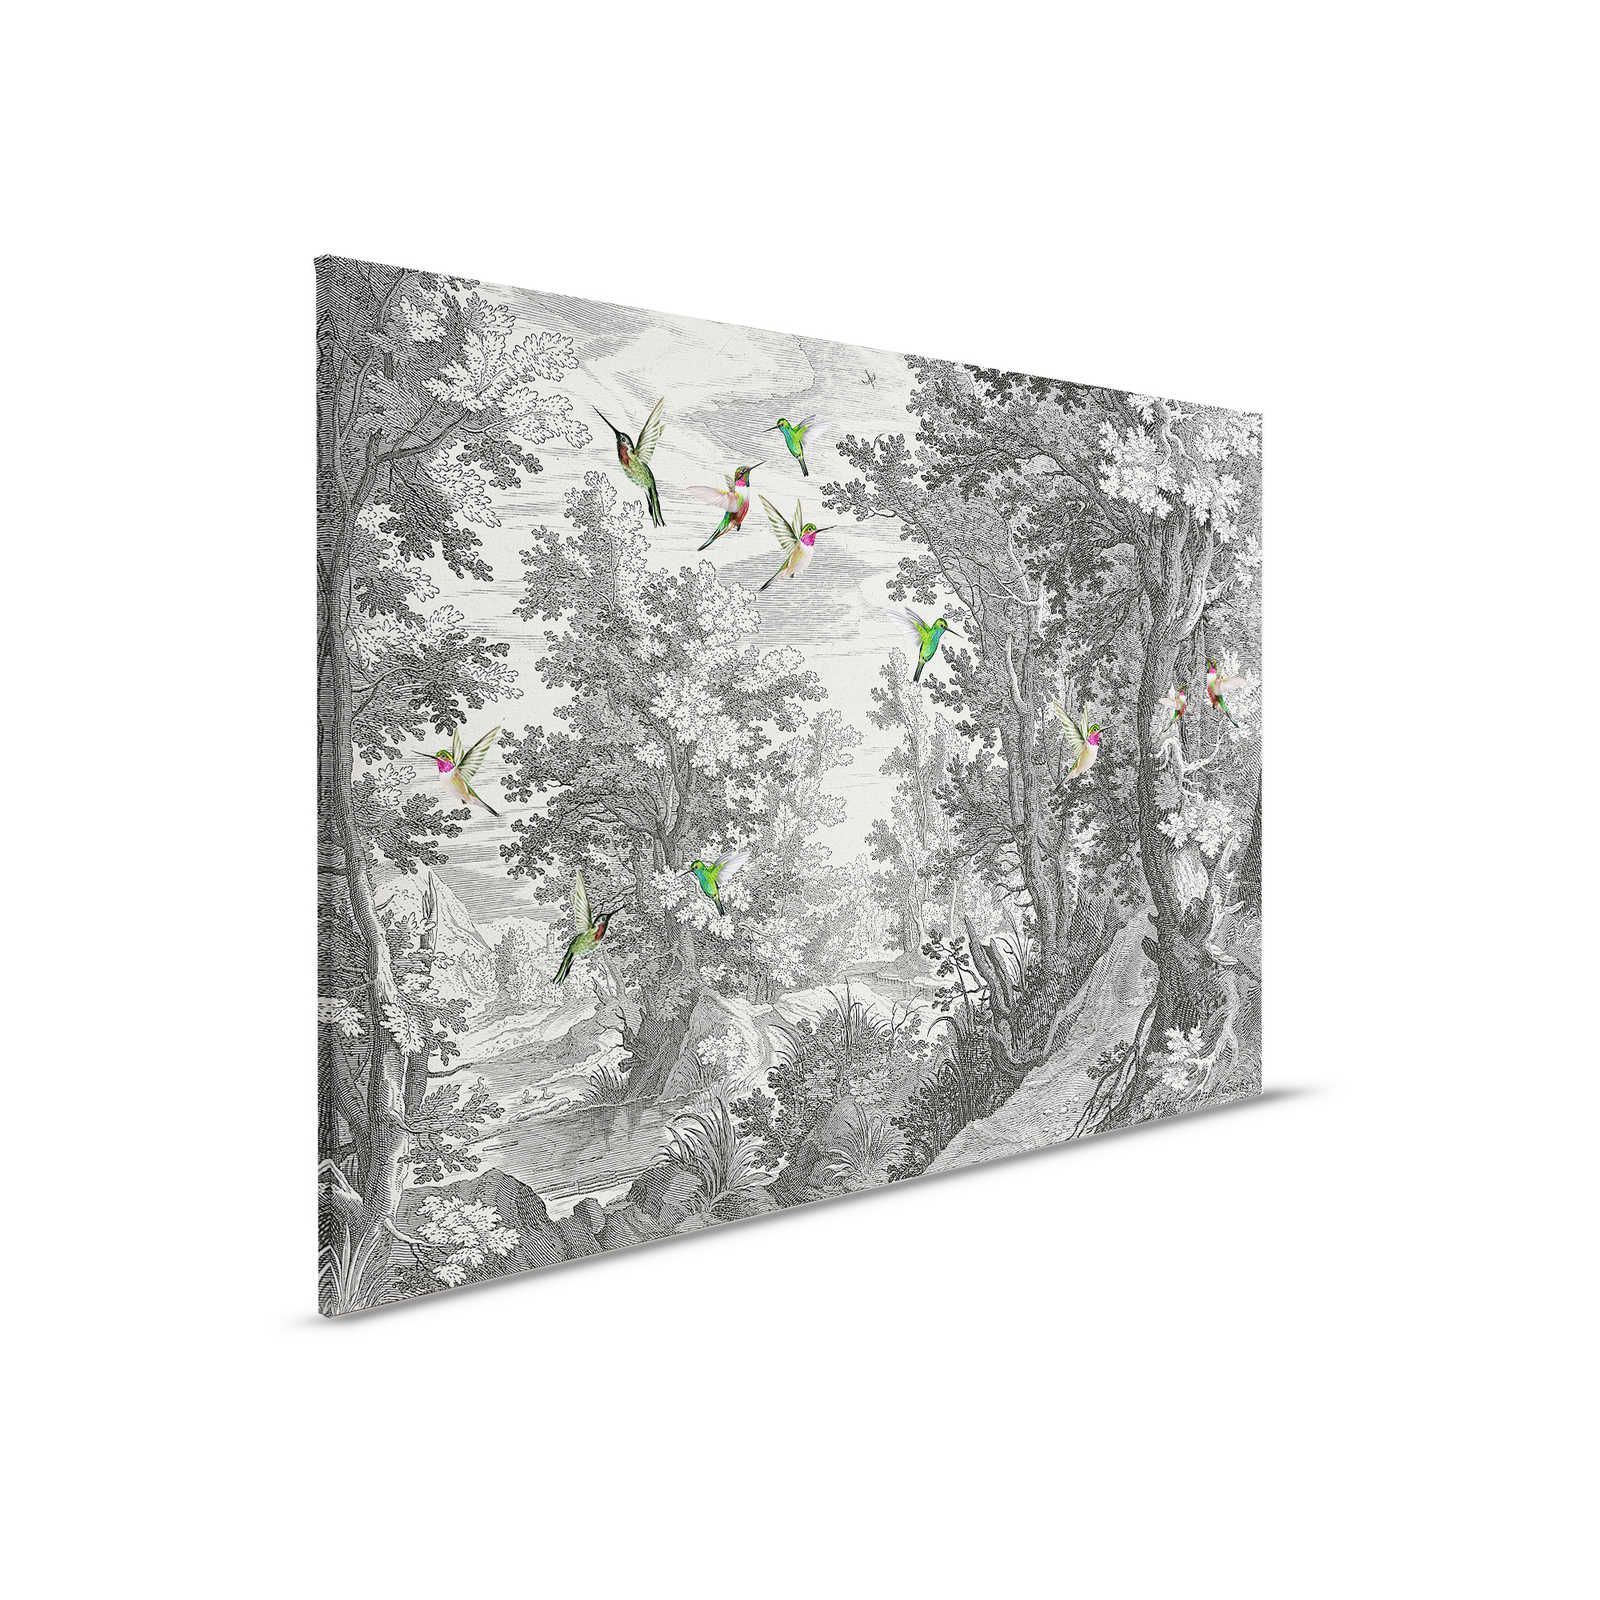         Fancy Forest 1 - Landschaft Leinwandbild Kunstdruck mit Vögeln – 0,90 m x 0,60 m
    